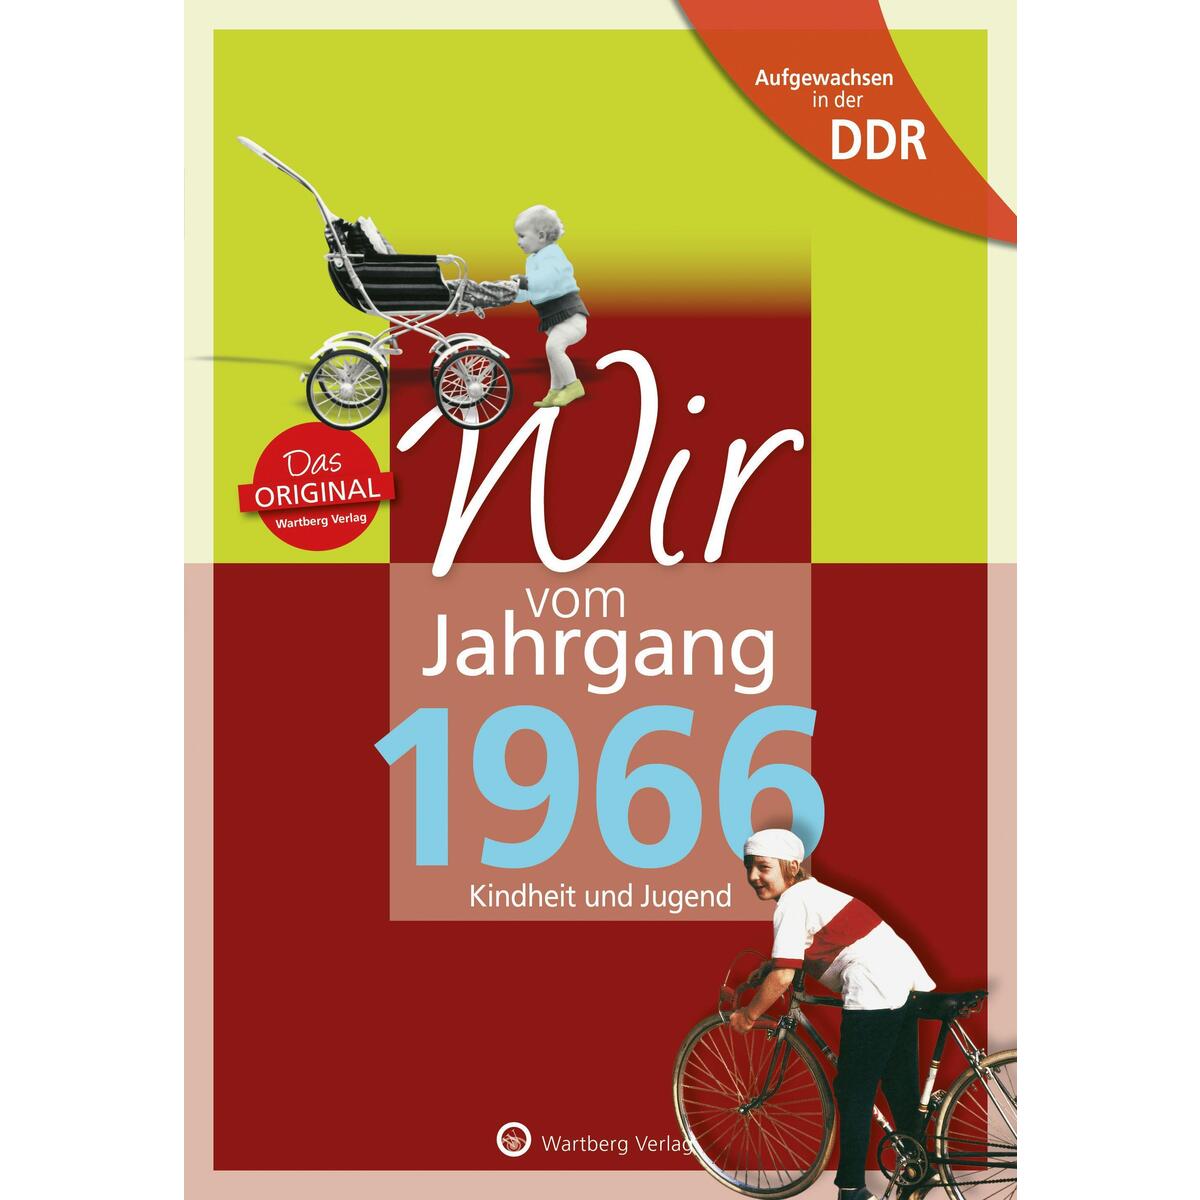 Aufgewachsen in der DDR - Wir vom Jahrgang 1966 - Kindheit und Jugend von Wartberg Verlag